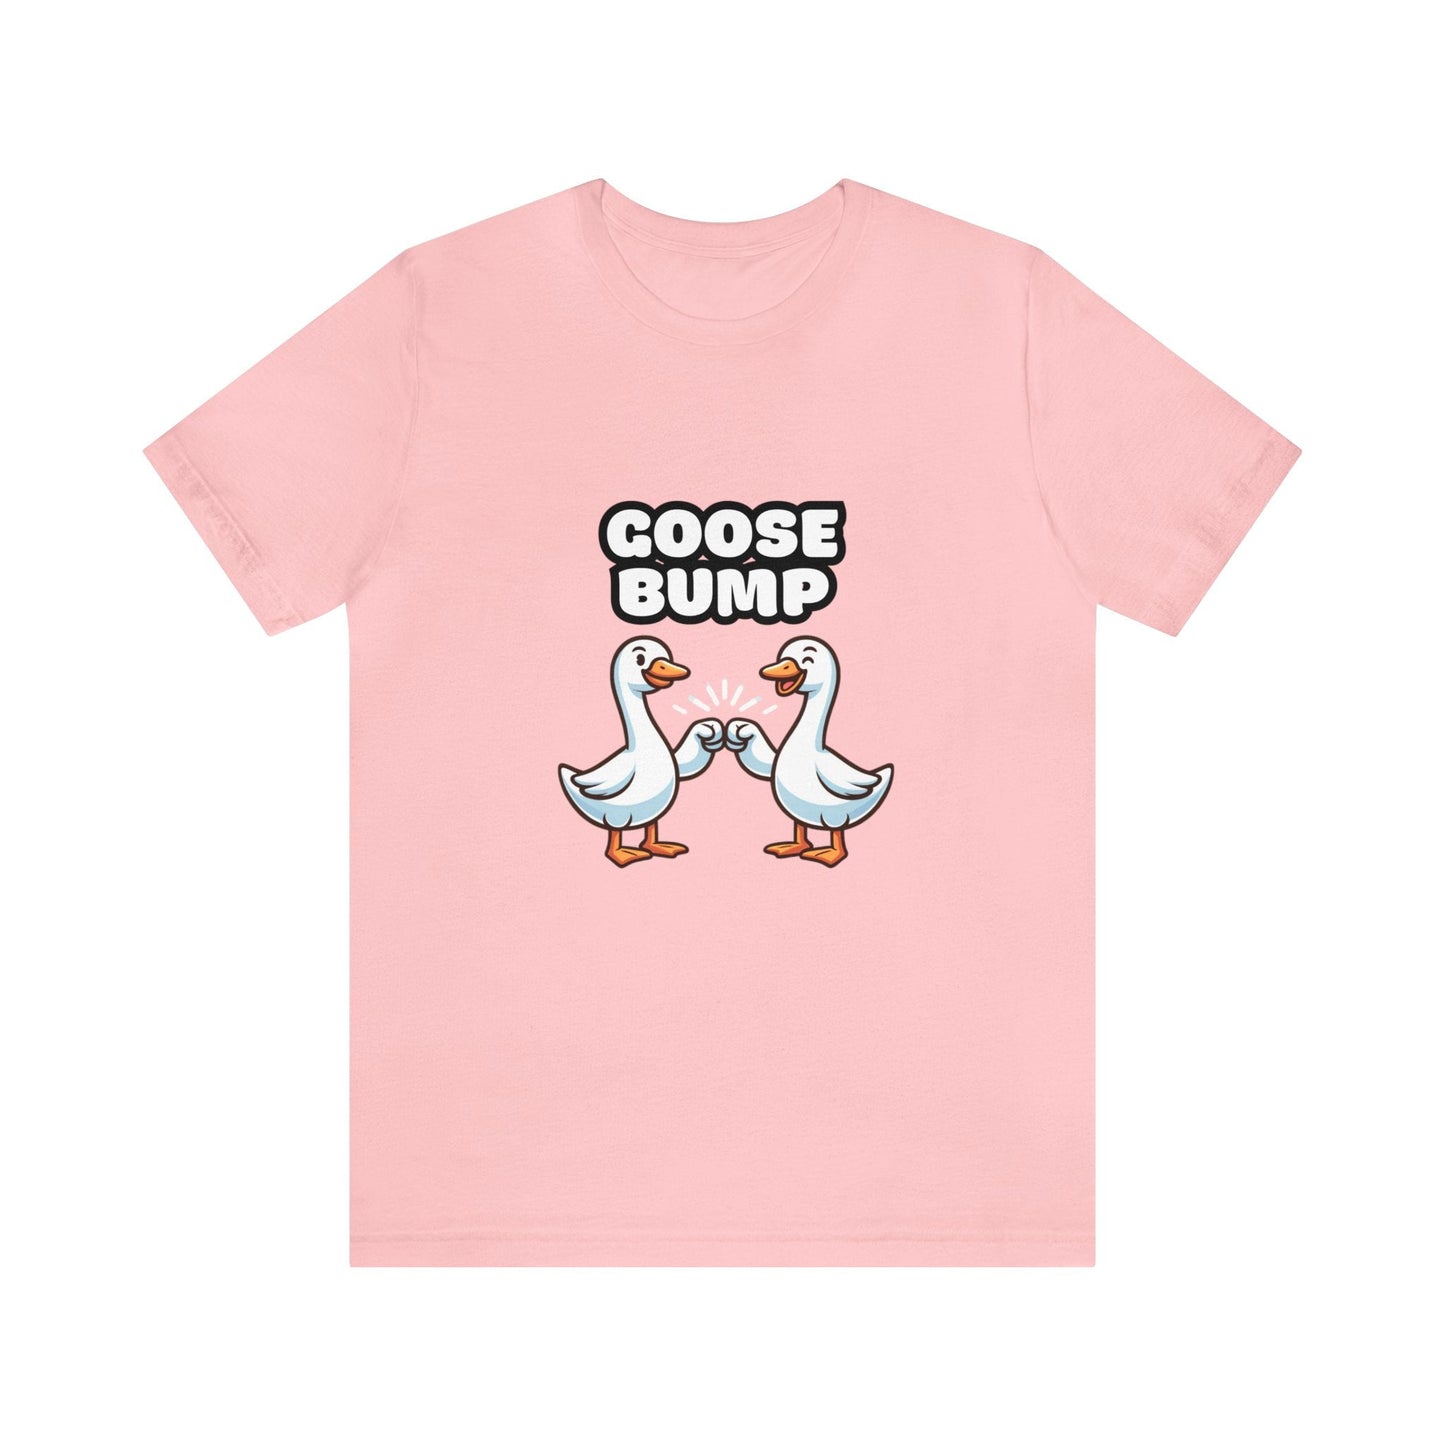 US - Goose Bump - Goose T-shirt Pink / XS